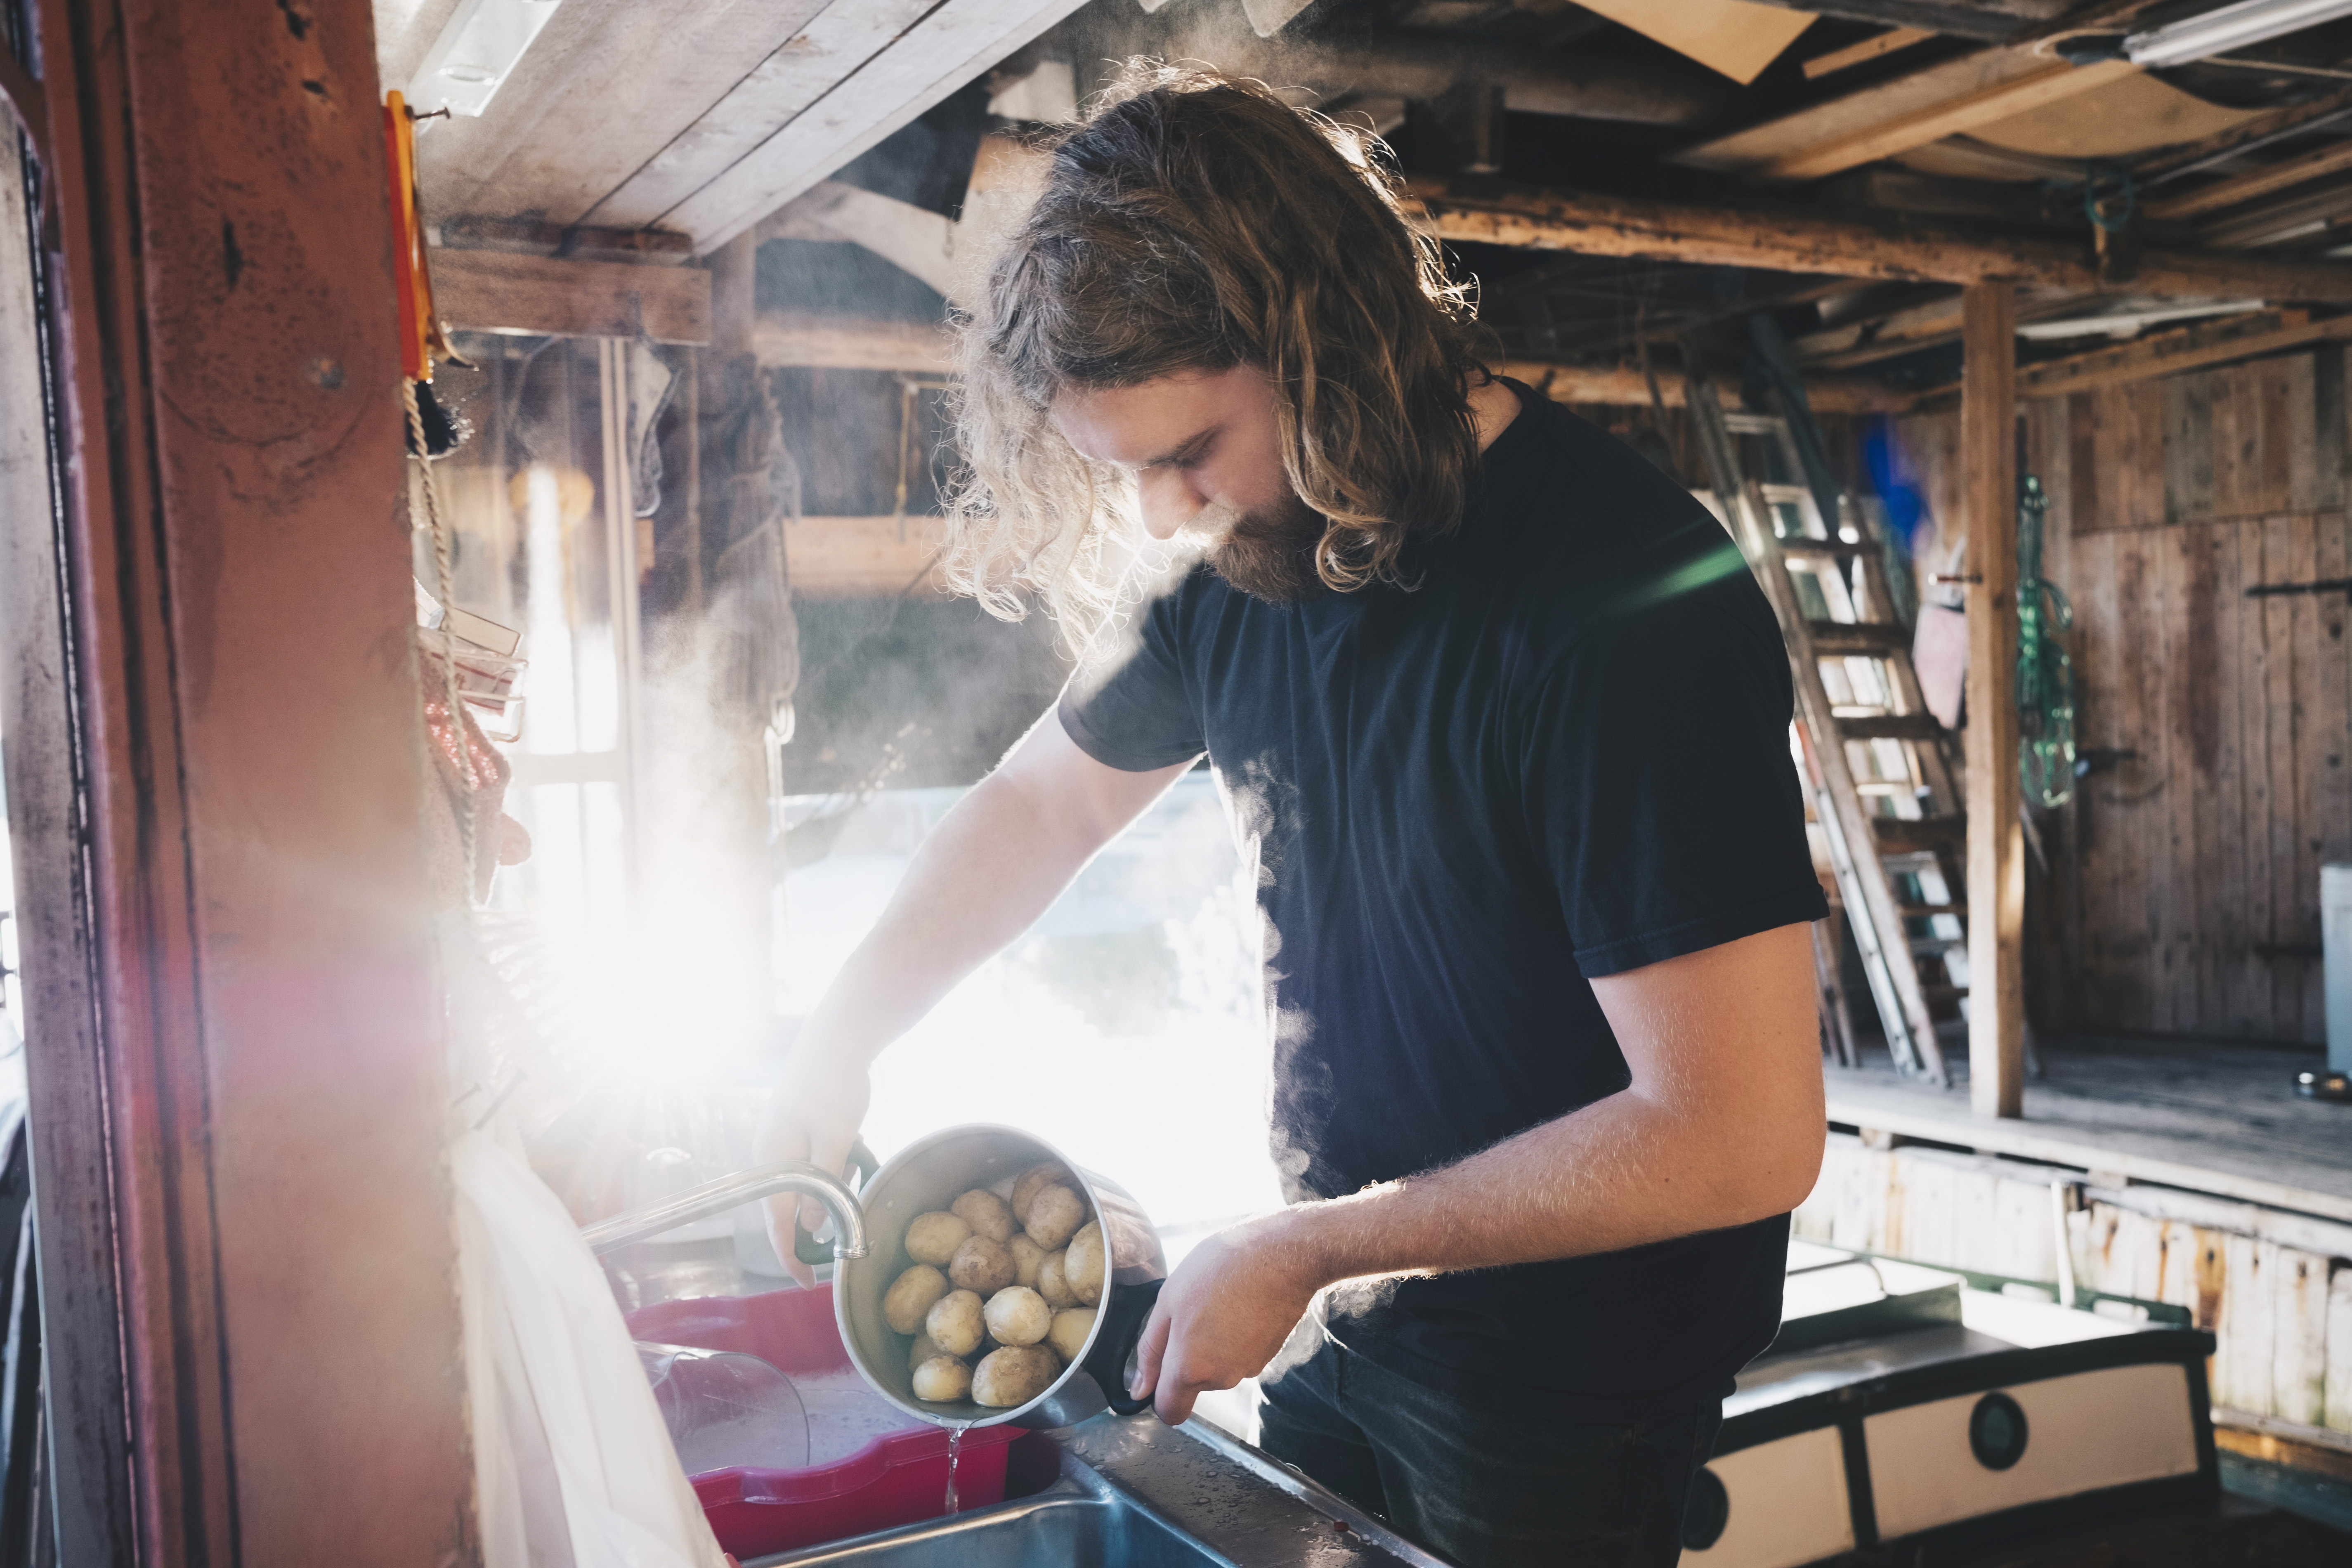 Mann bruker strøm på hytta når han koker poteter